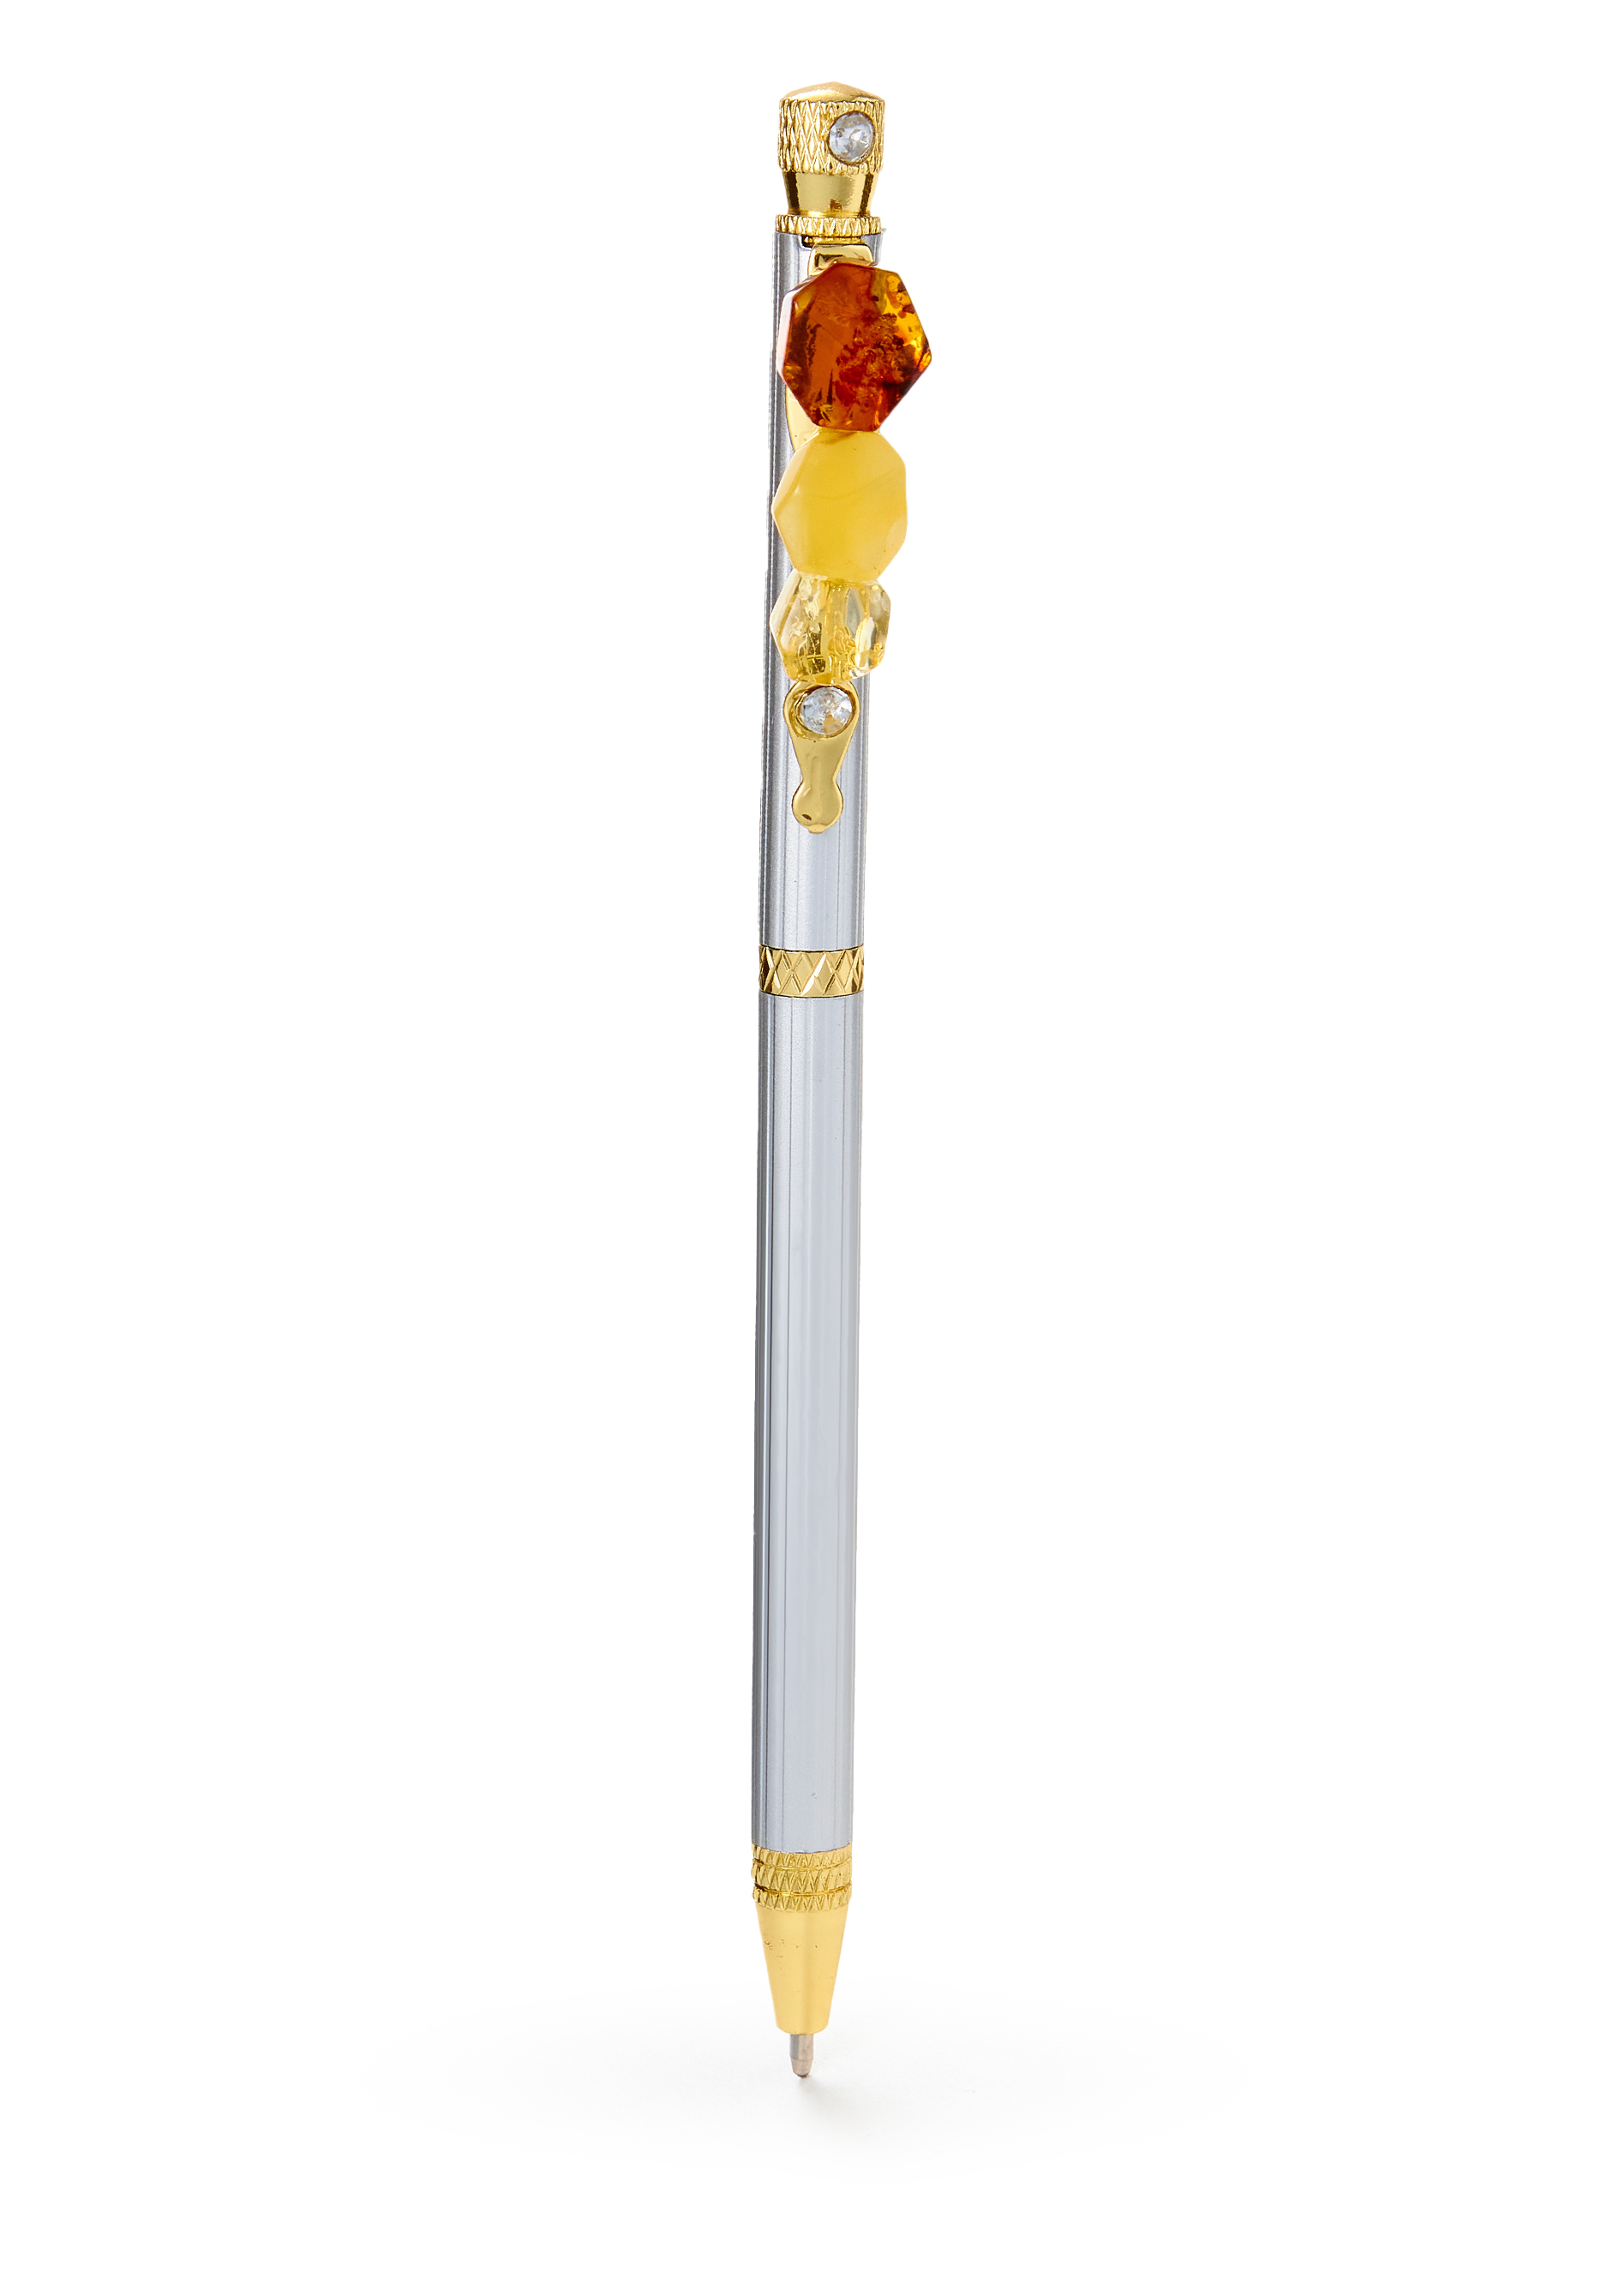 Ручка с янтарем сажалка для луковичных растений длина 23 см деревянная ручка